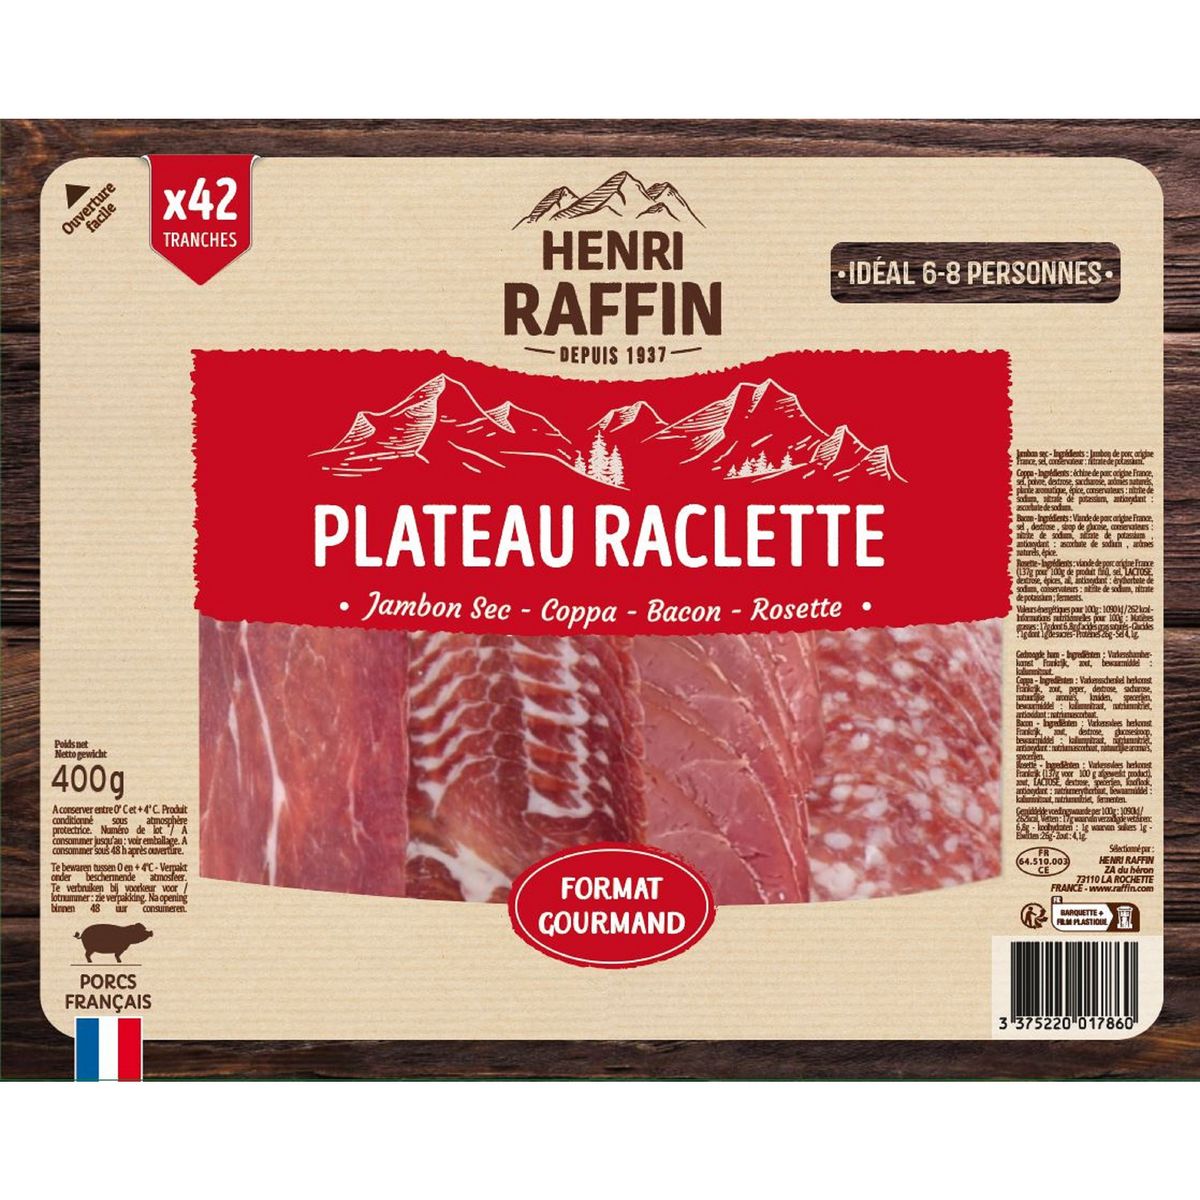 HENRI RAFFIN Plateau raclette jambon de Savoie coppa bacon rosette 42 tranches 400g